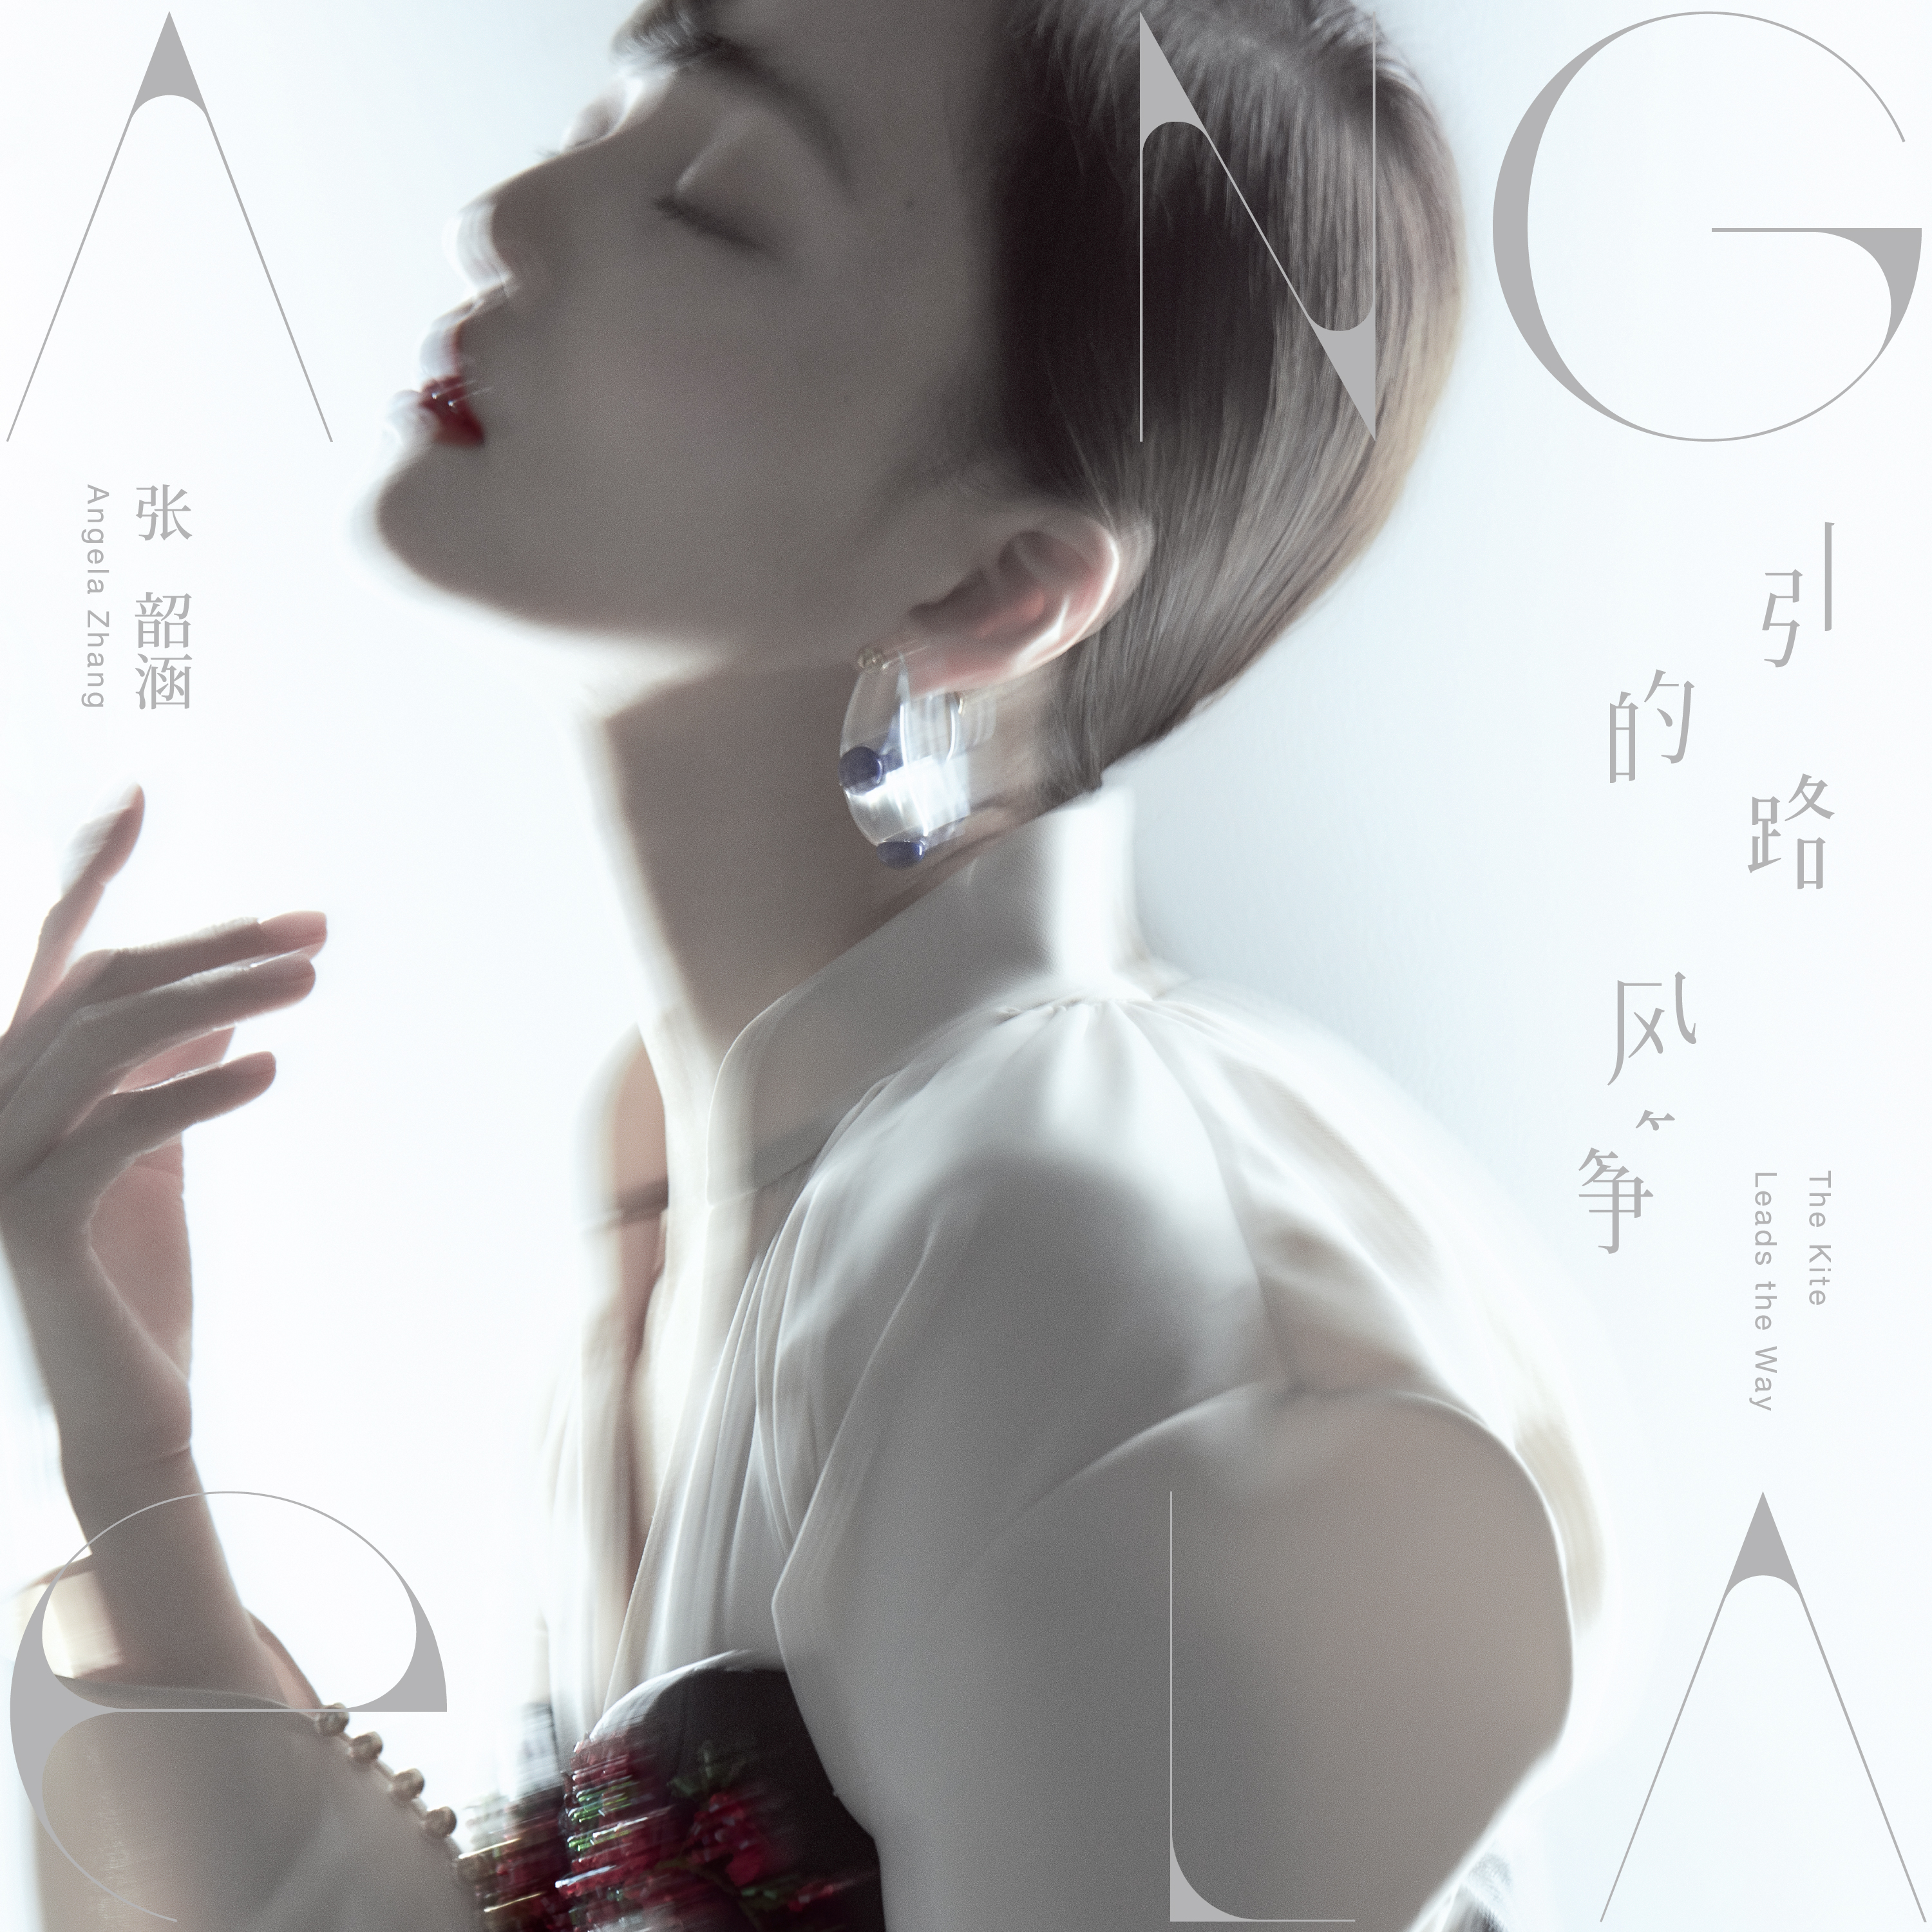 《引路的风筝》作为张韶涵2019全新专辑的首波主打单曲,歌曲中展现出